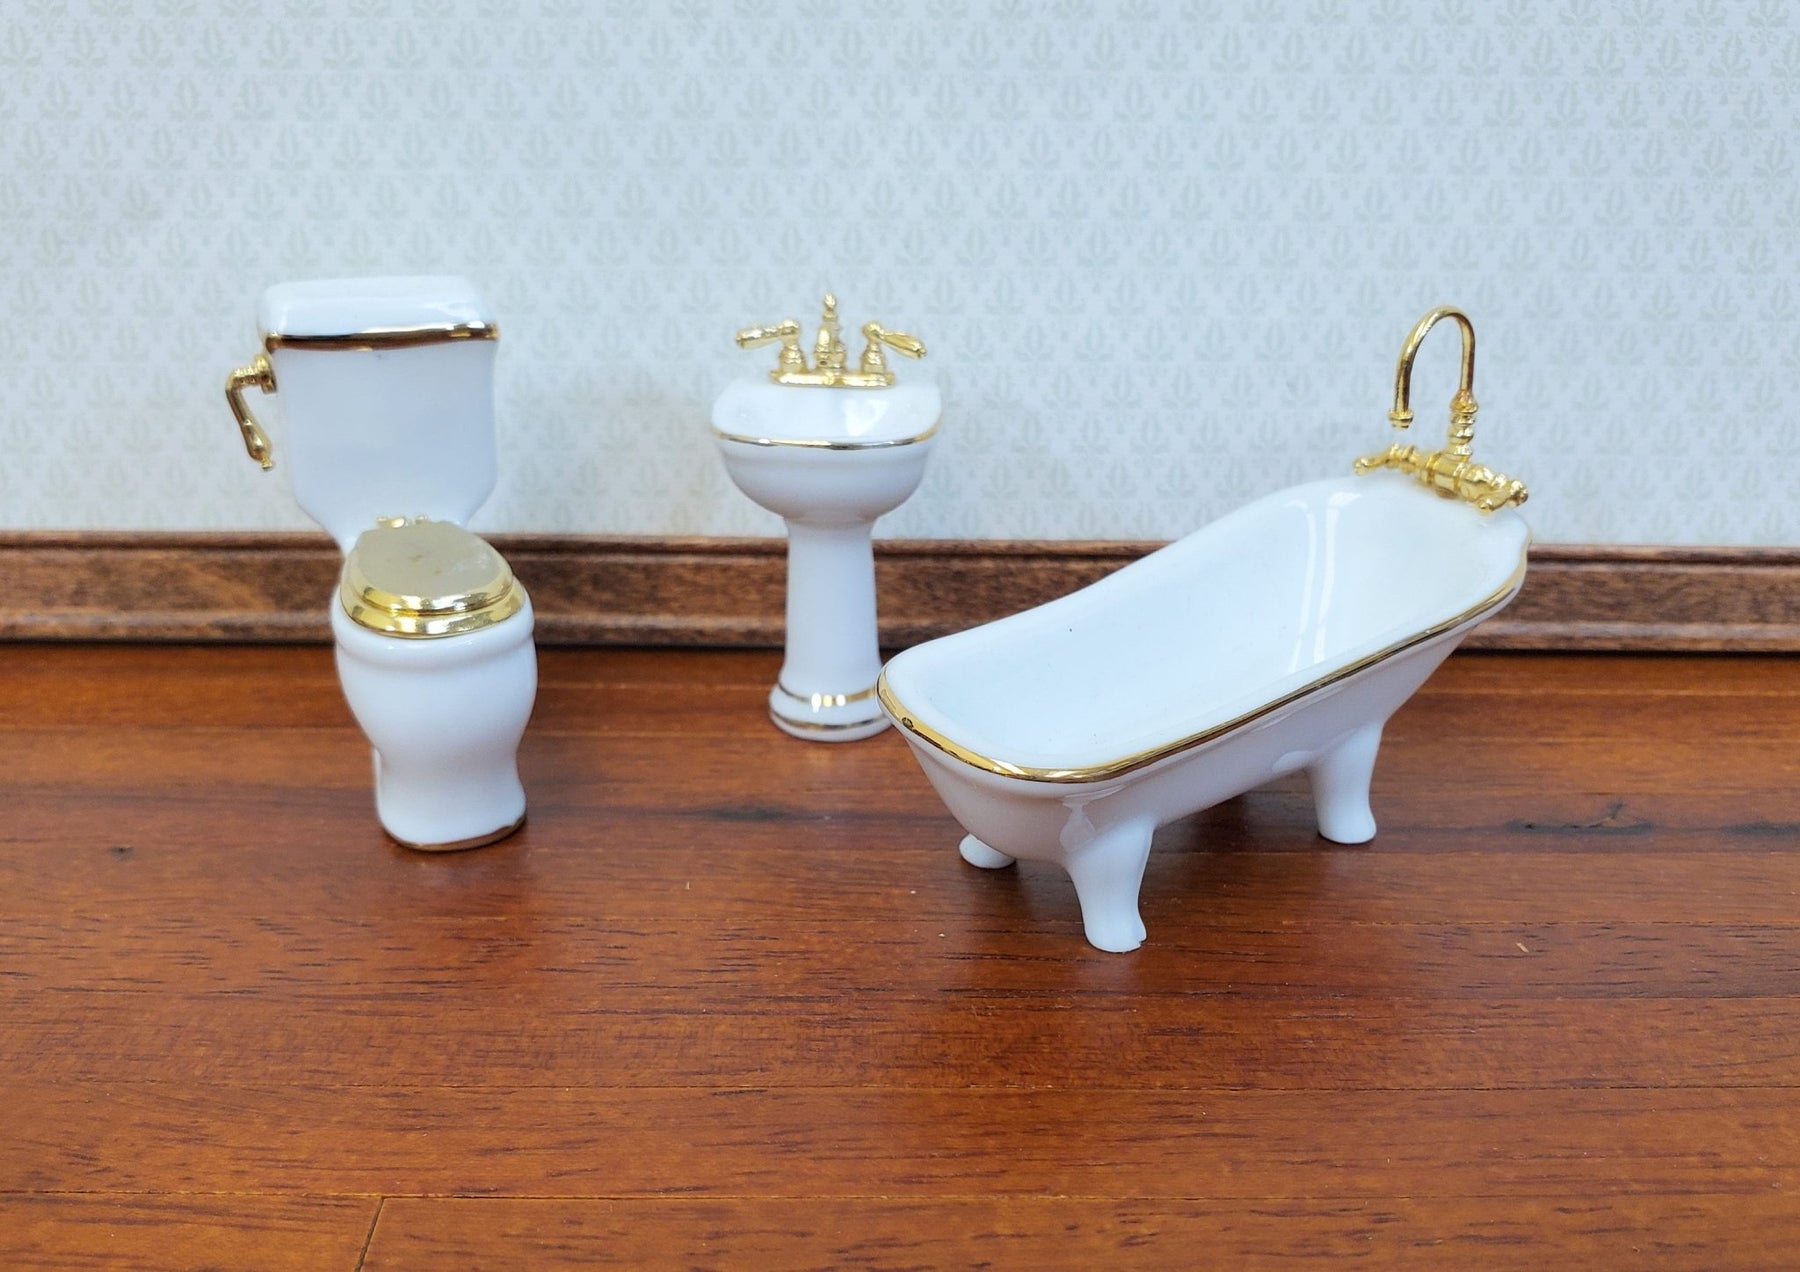 Dollhouse HALF SCALE 24k Toilet Gold Reutter Tub Set - 1:24 Crush Miniatures Accents Sink Bathroom Miniature Porcelain